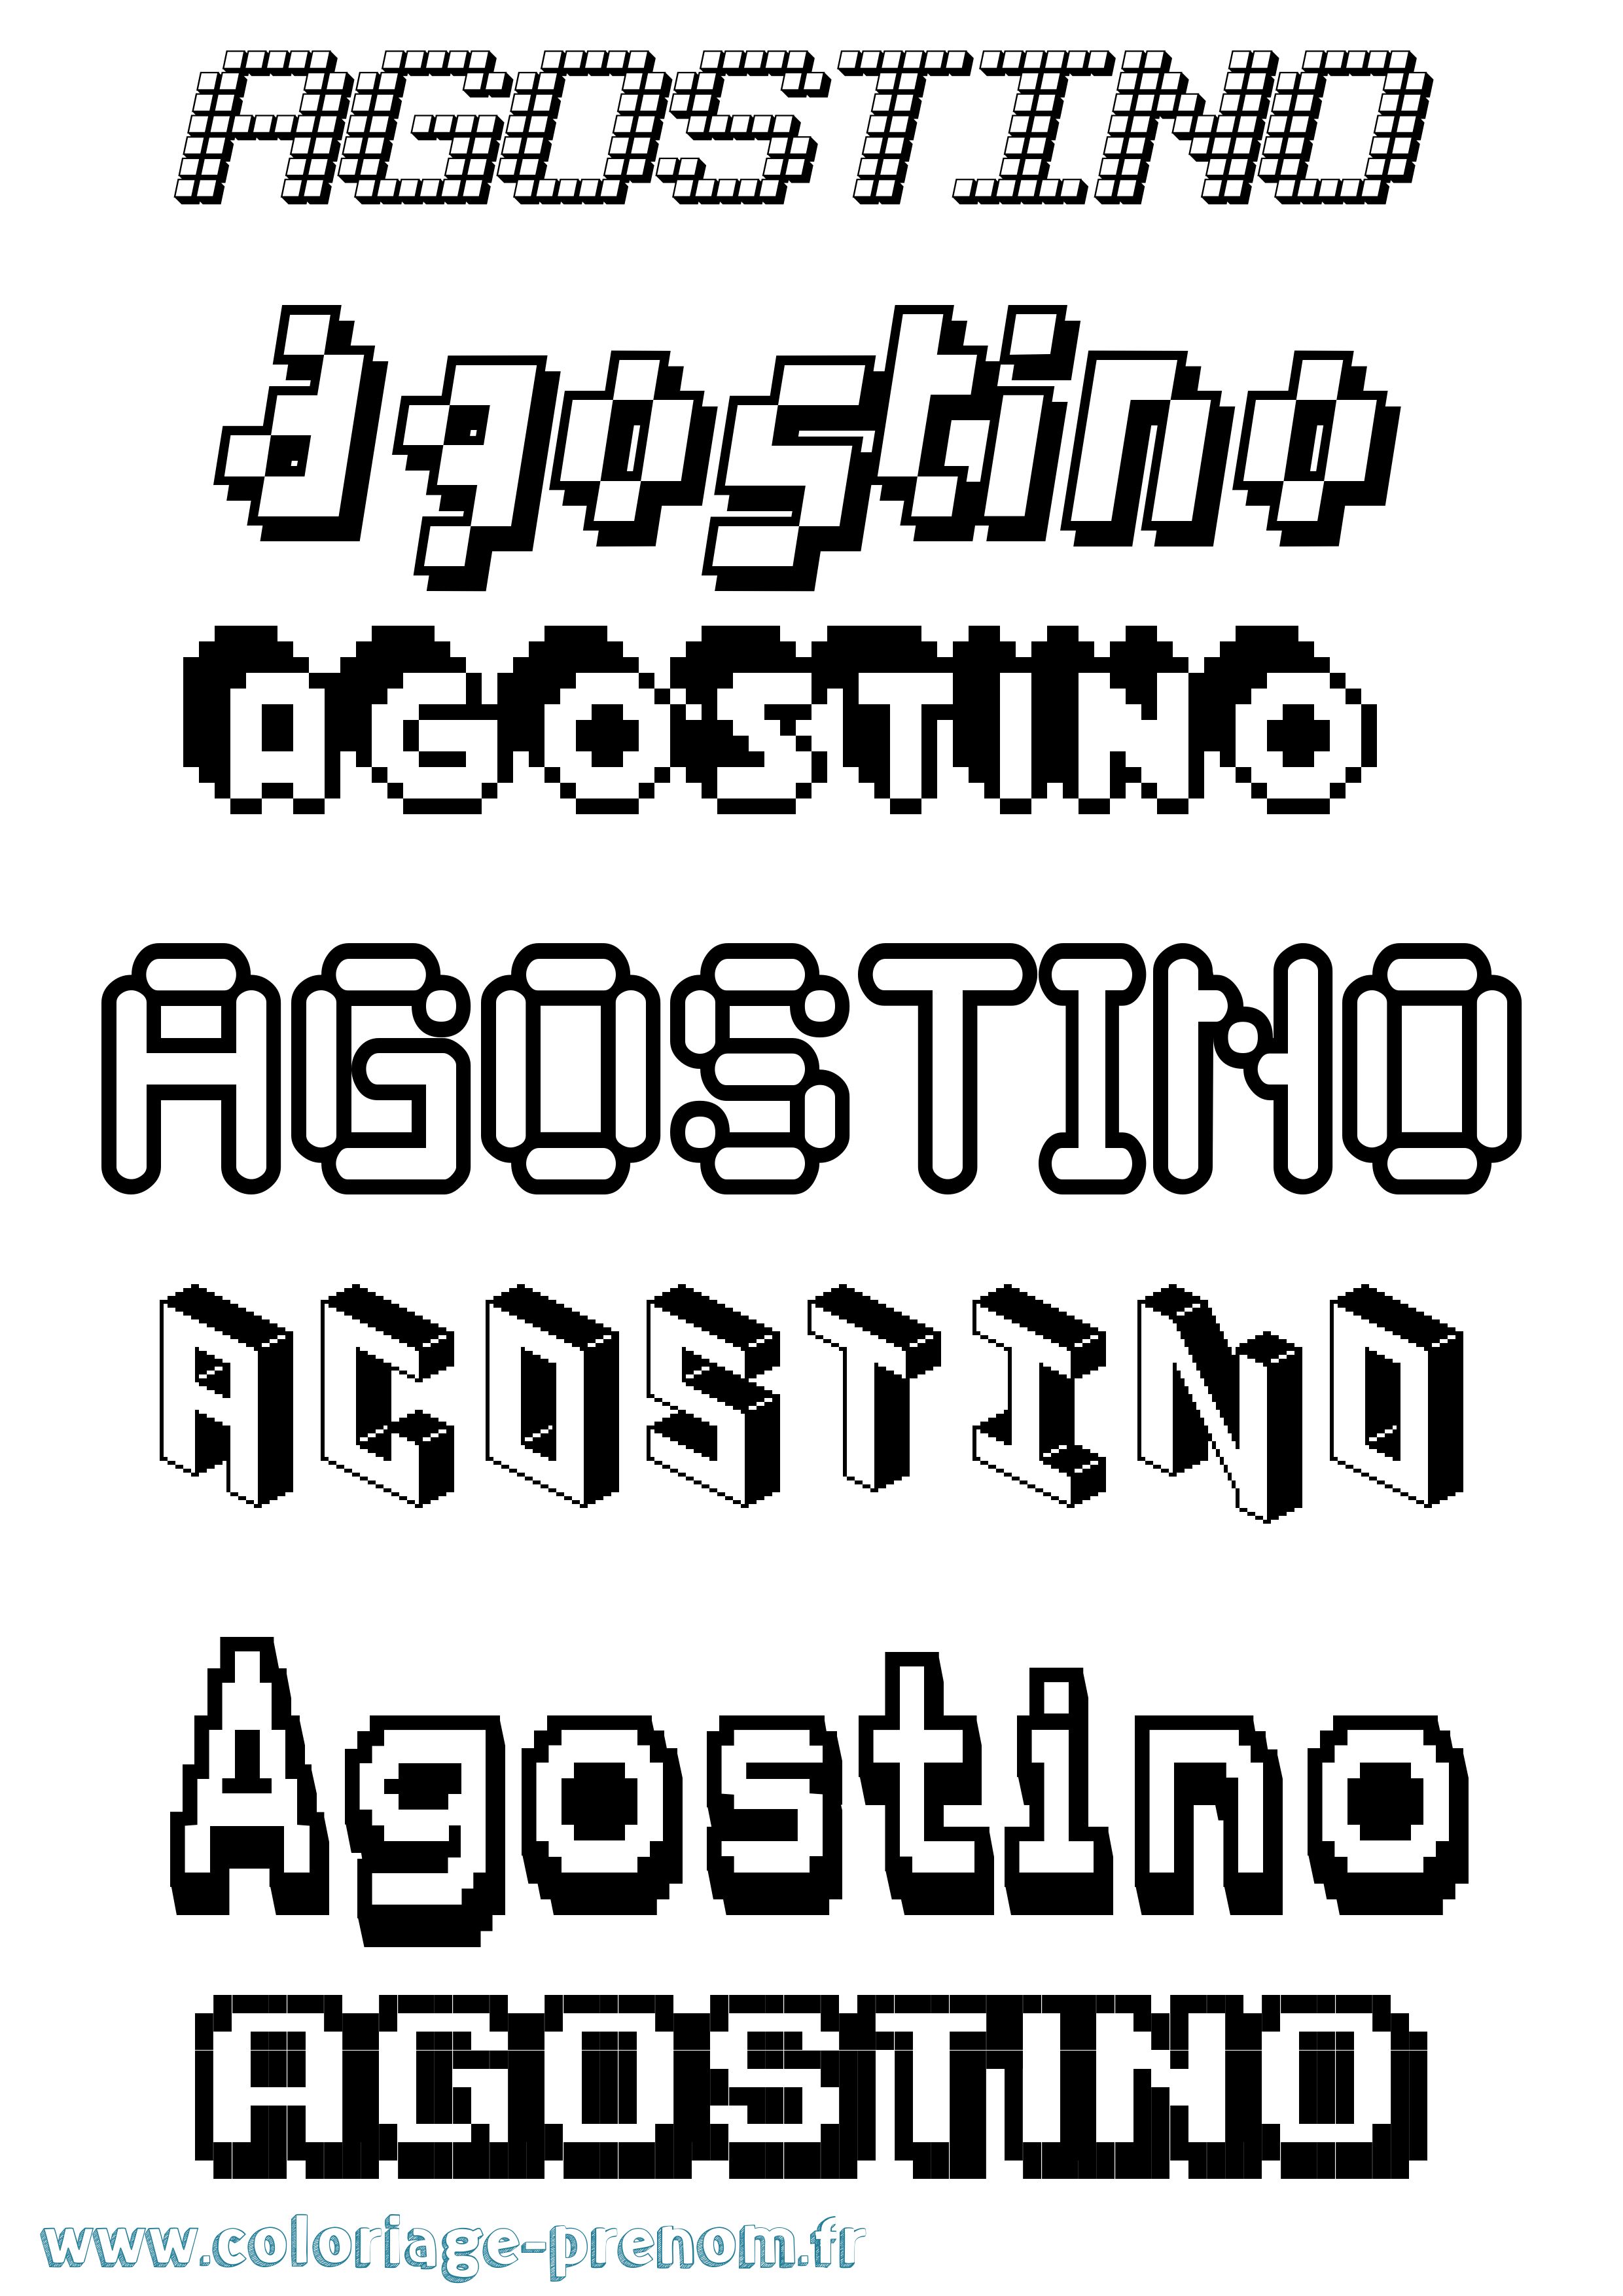 Coloriage prénom Agostino Pixel